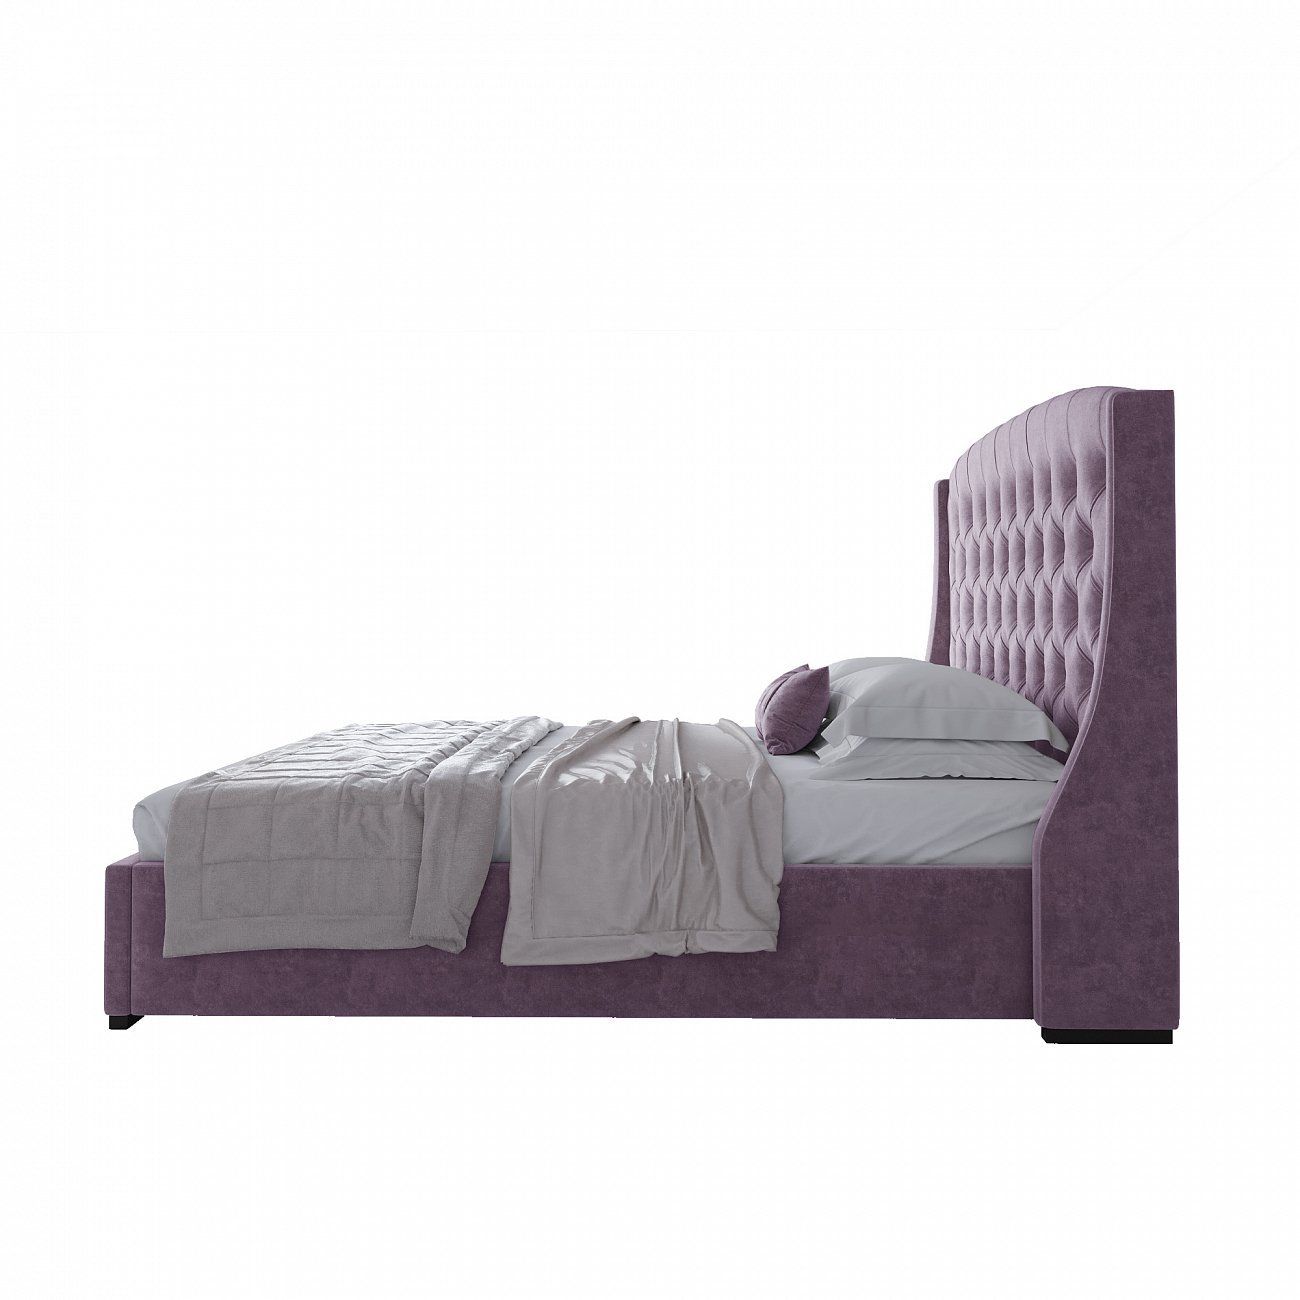 Double bed 180x200 purple Hugo